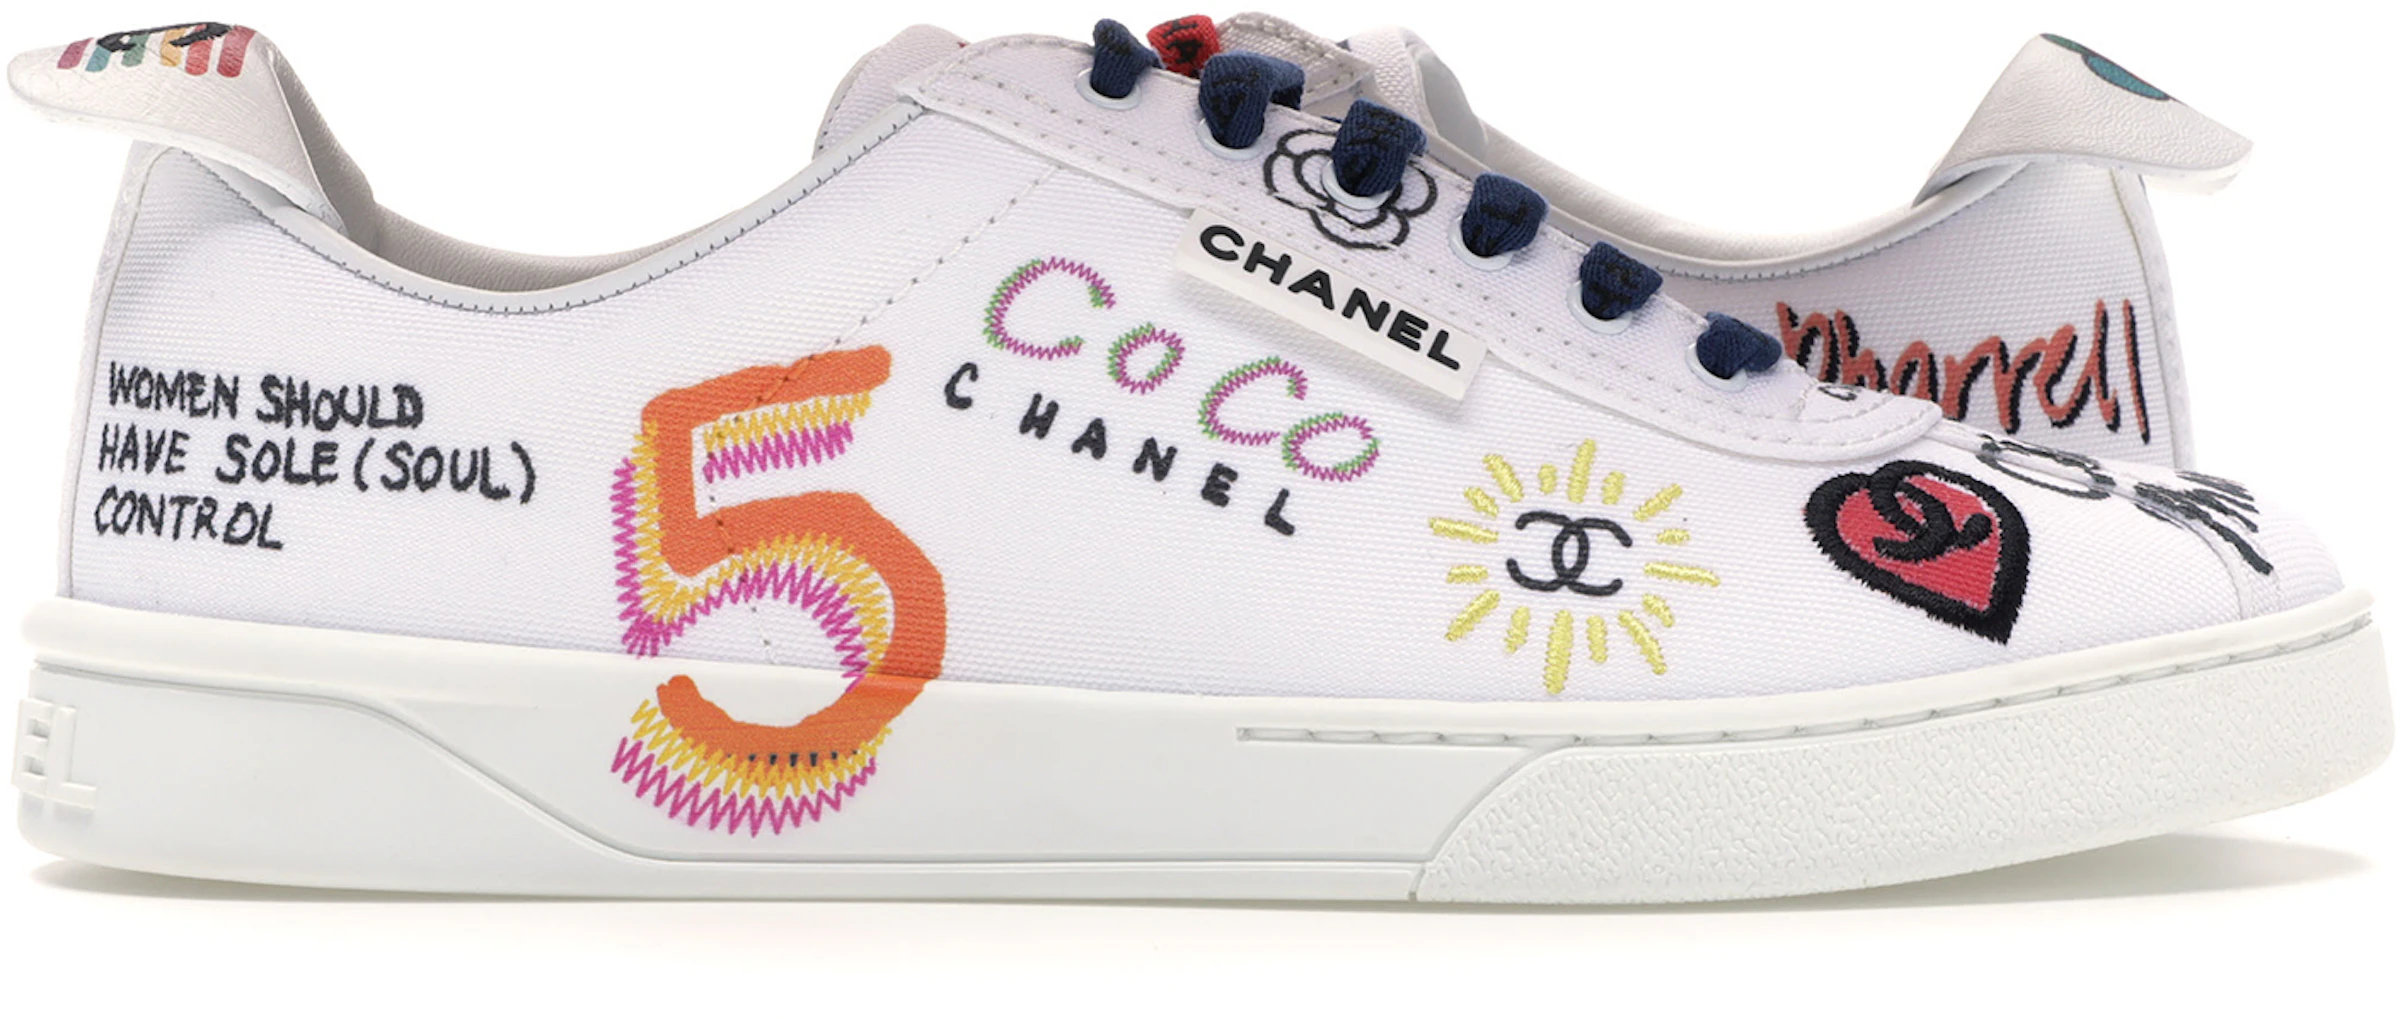 vod component merk Chanel Sneakers Pharrell White Multi-Color (Women's) - 19D G34877X53027  C2340 - US